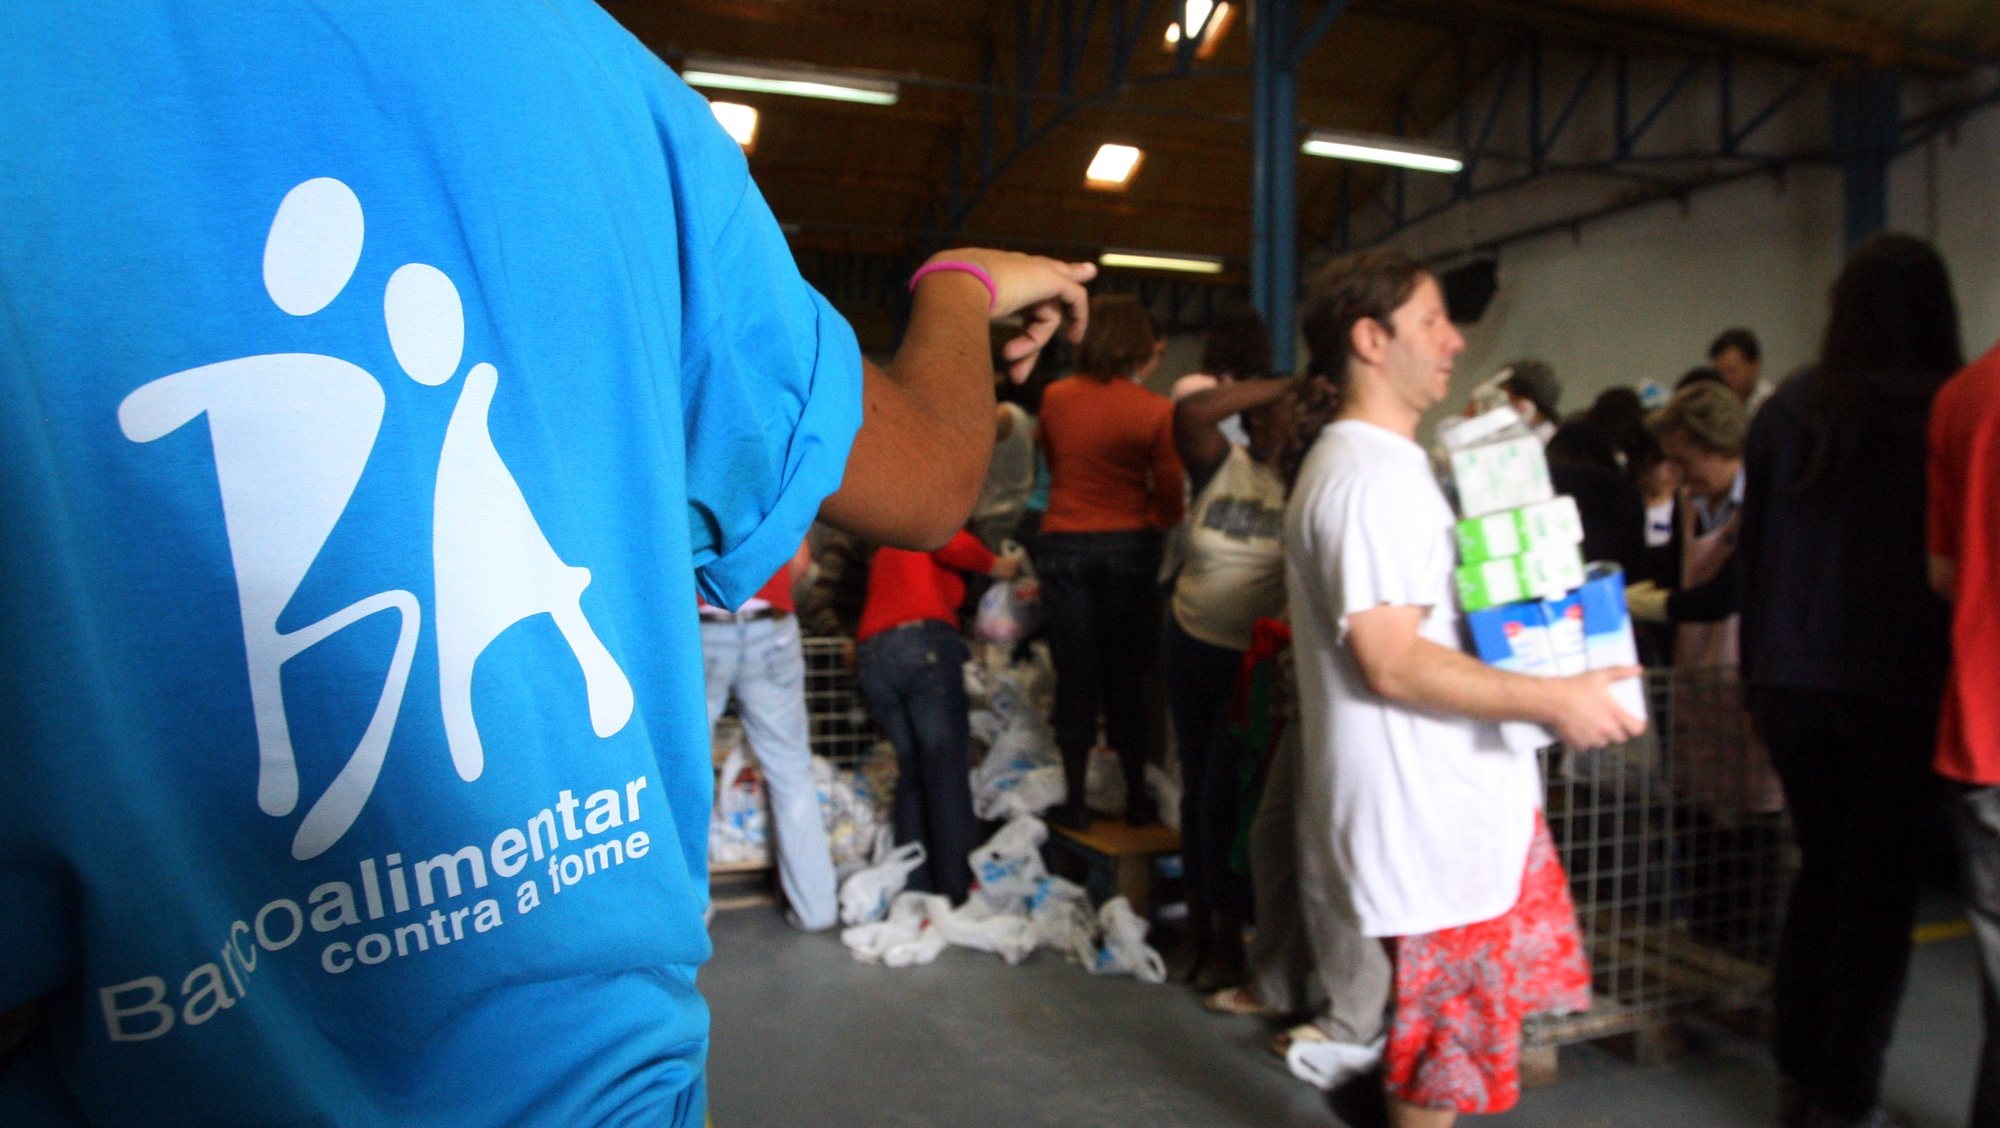 Voluntários separam milhares de embalagens de alimentos recolhidos pelo país, durante a campanha do Banco Alimentar contra a Fome, 04 de Maio de 2008, em Alcântara, Lisboa.  INACIO ROSA/LUSA